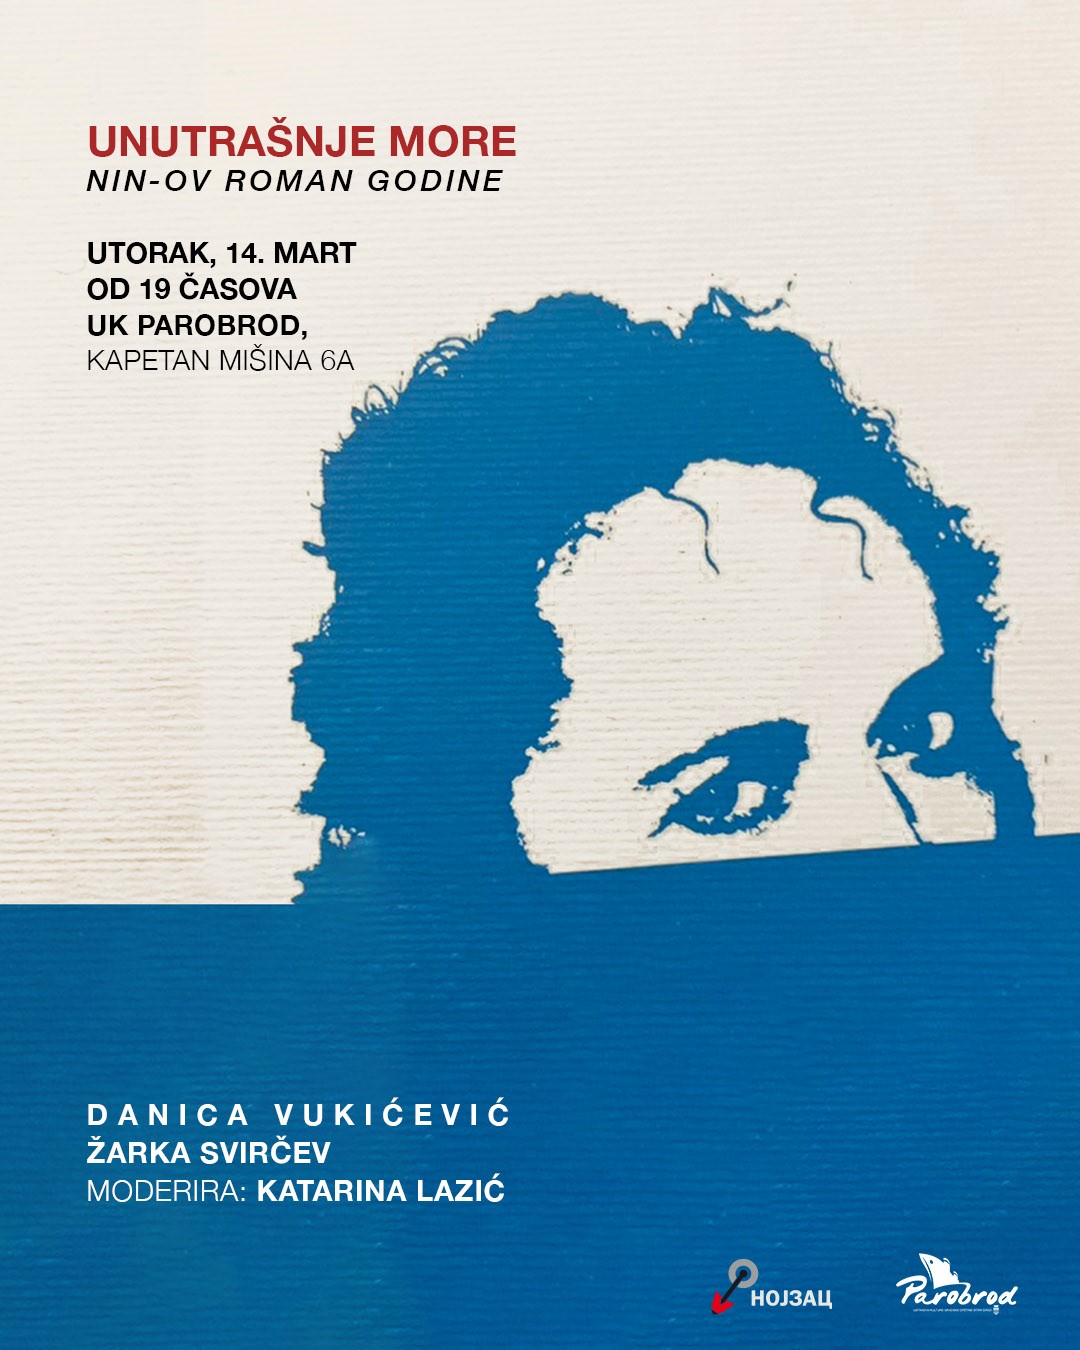 Promocija NIN-ovog romana godine „Unutrašnje more" Danice Vukićević u UK Parobrod 2